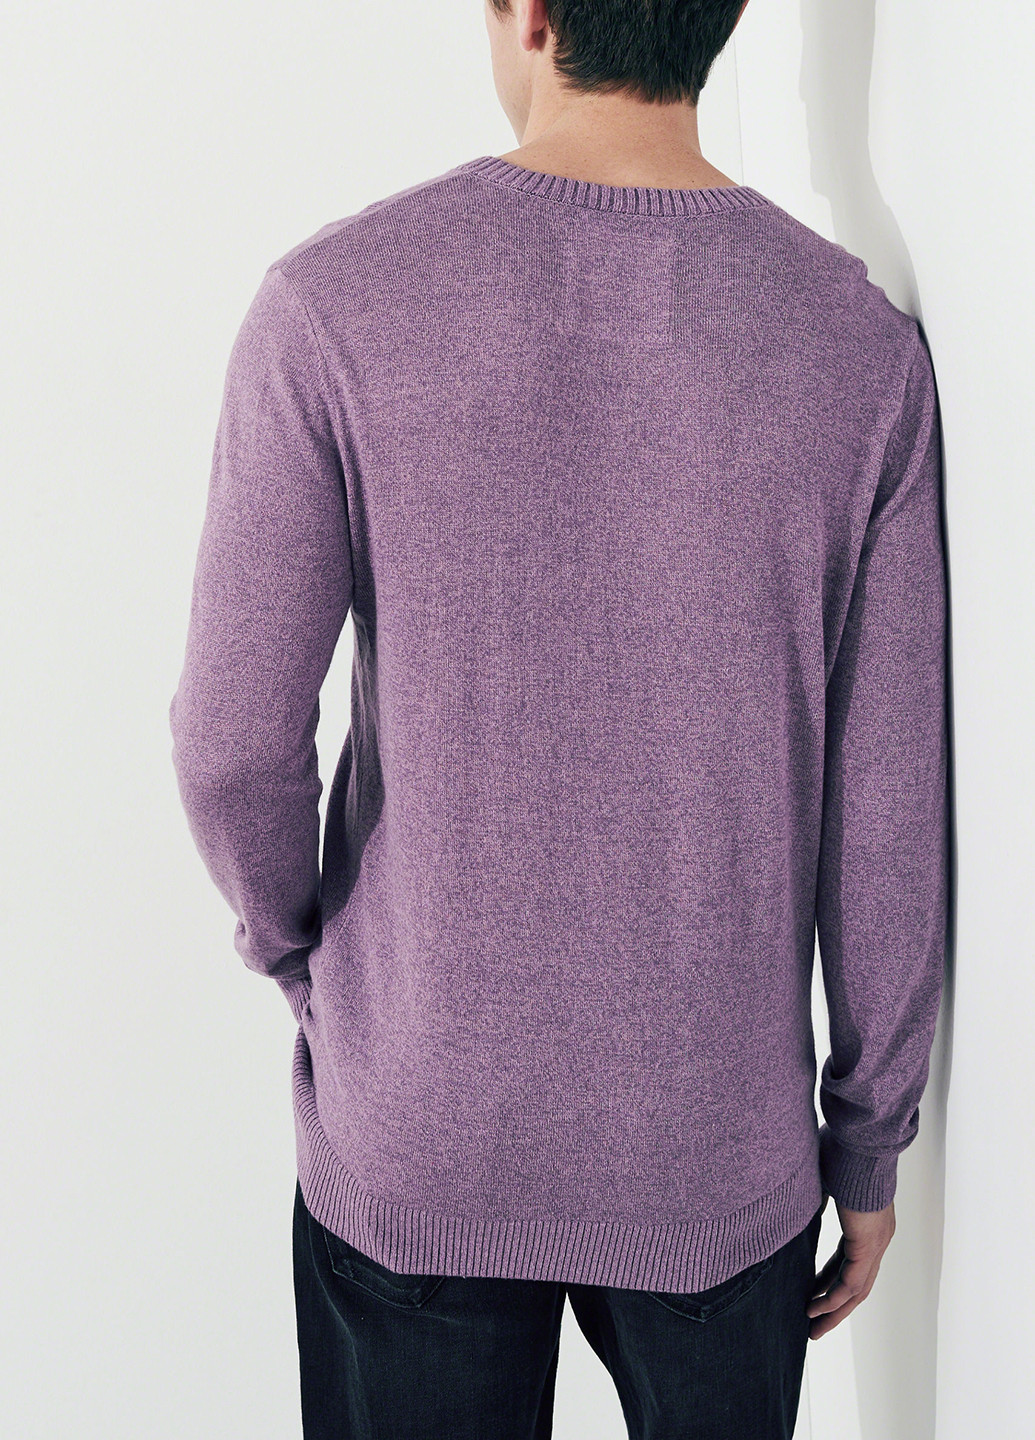 Сиреневый демисезонный пуловер пуловер Hollister